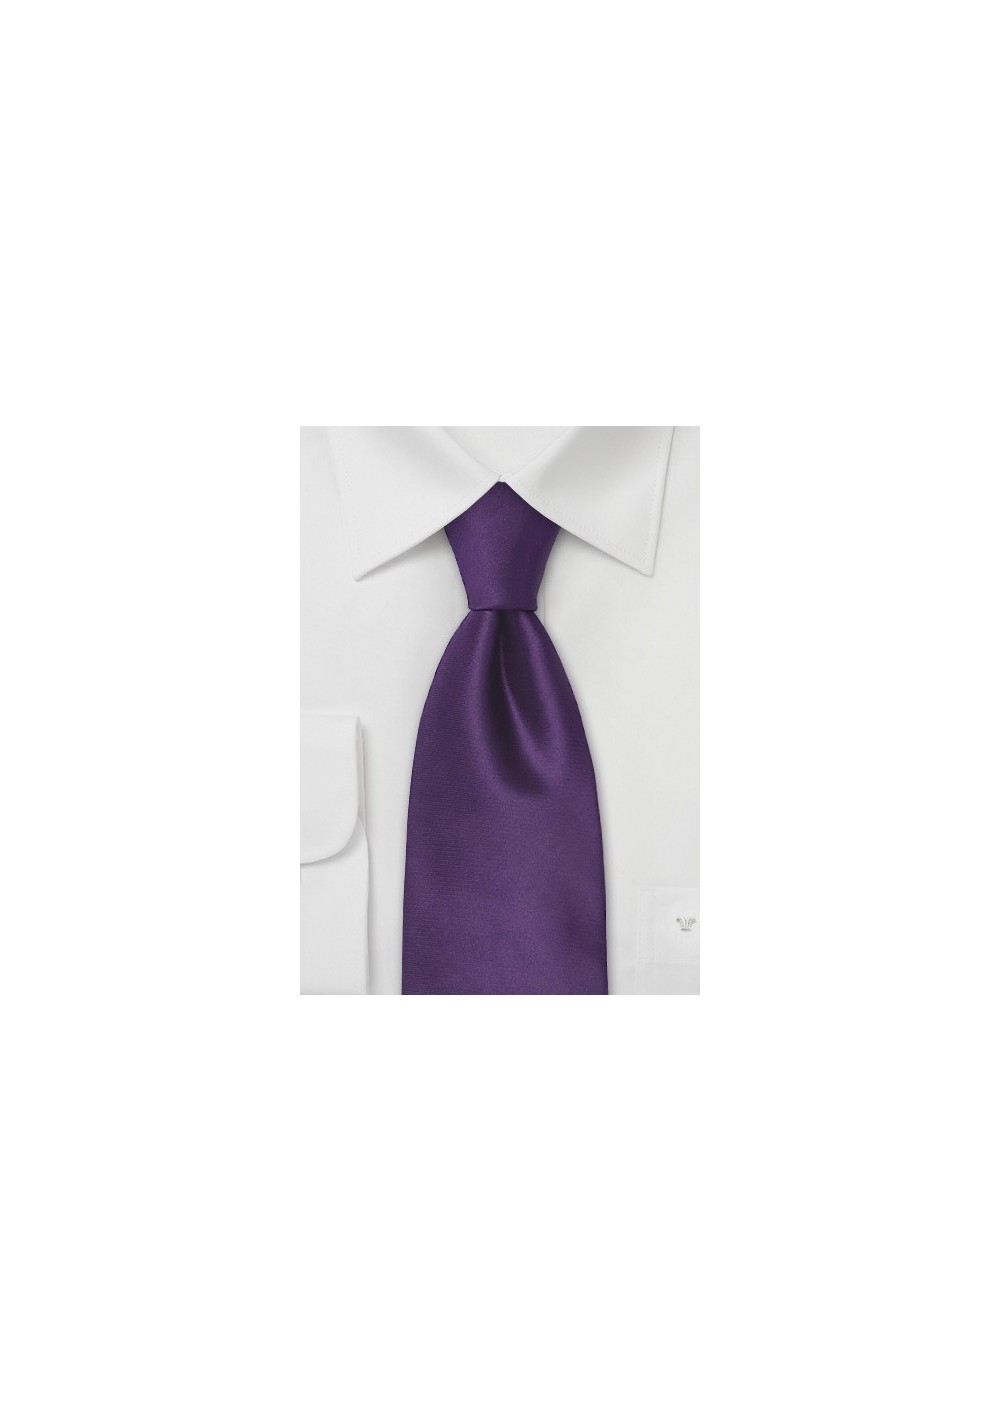 Indigo-Purple Silk Tie for Kids